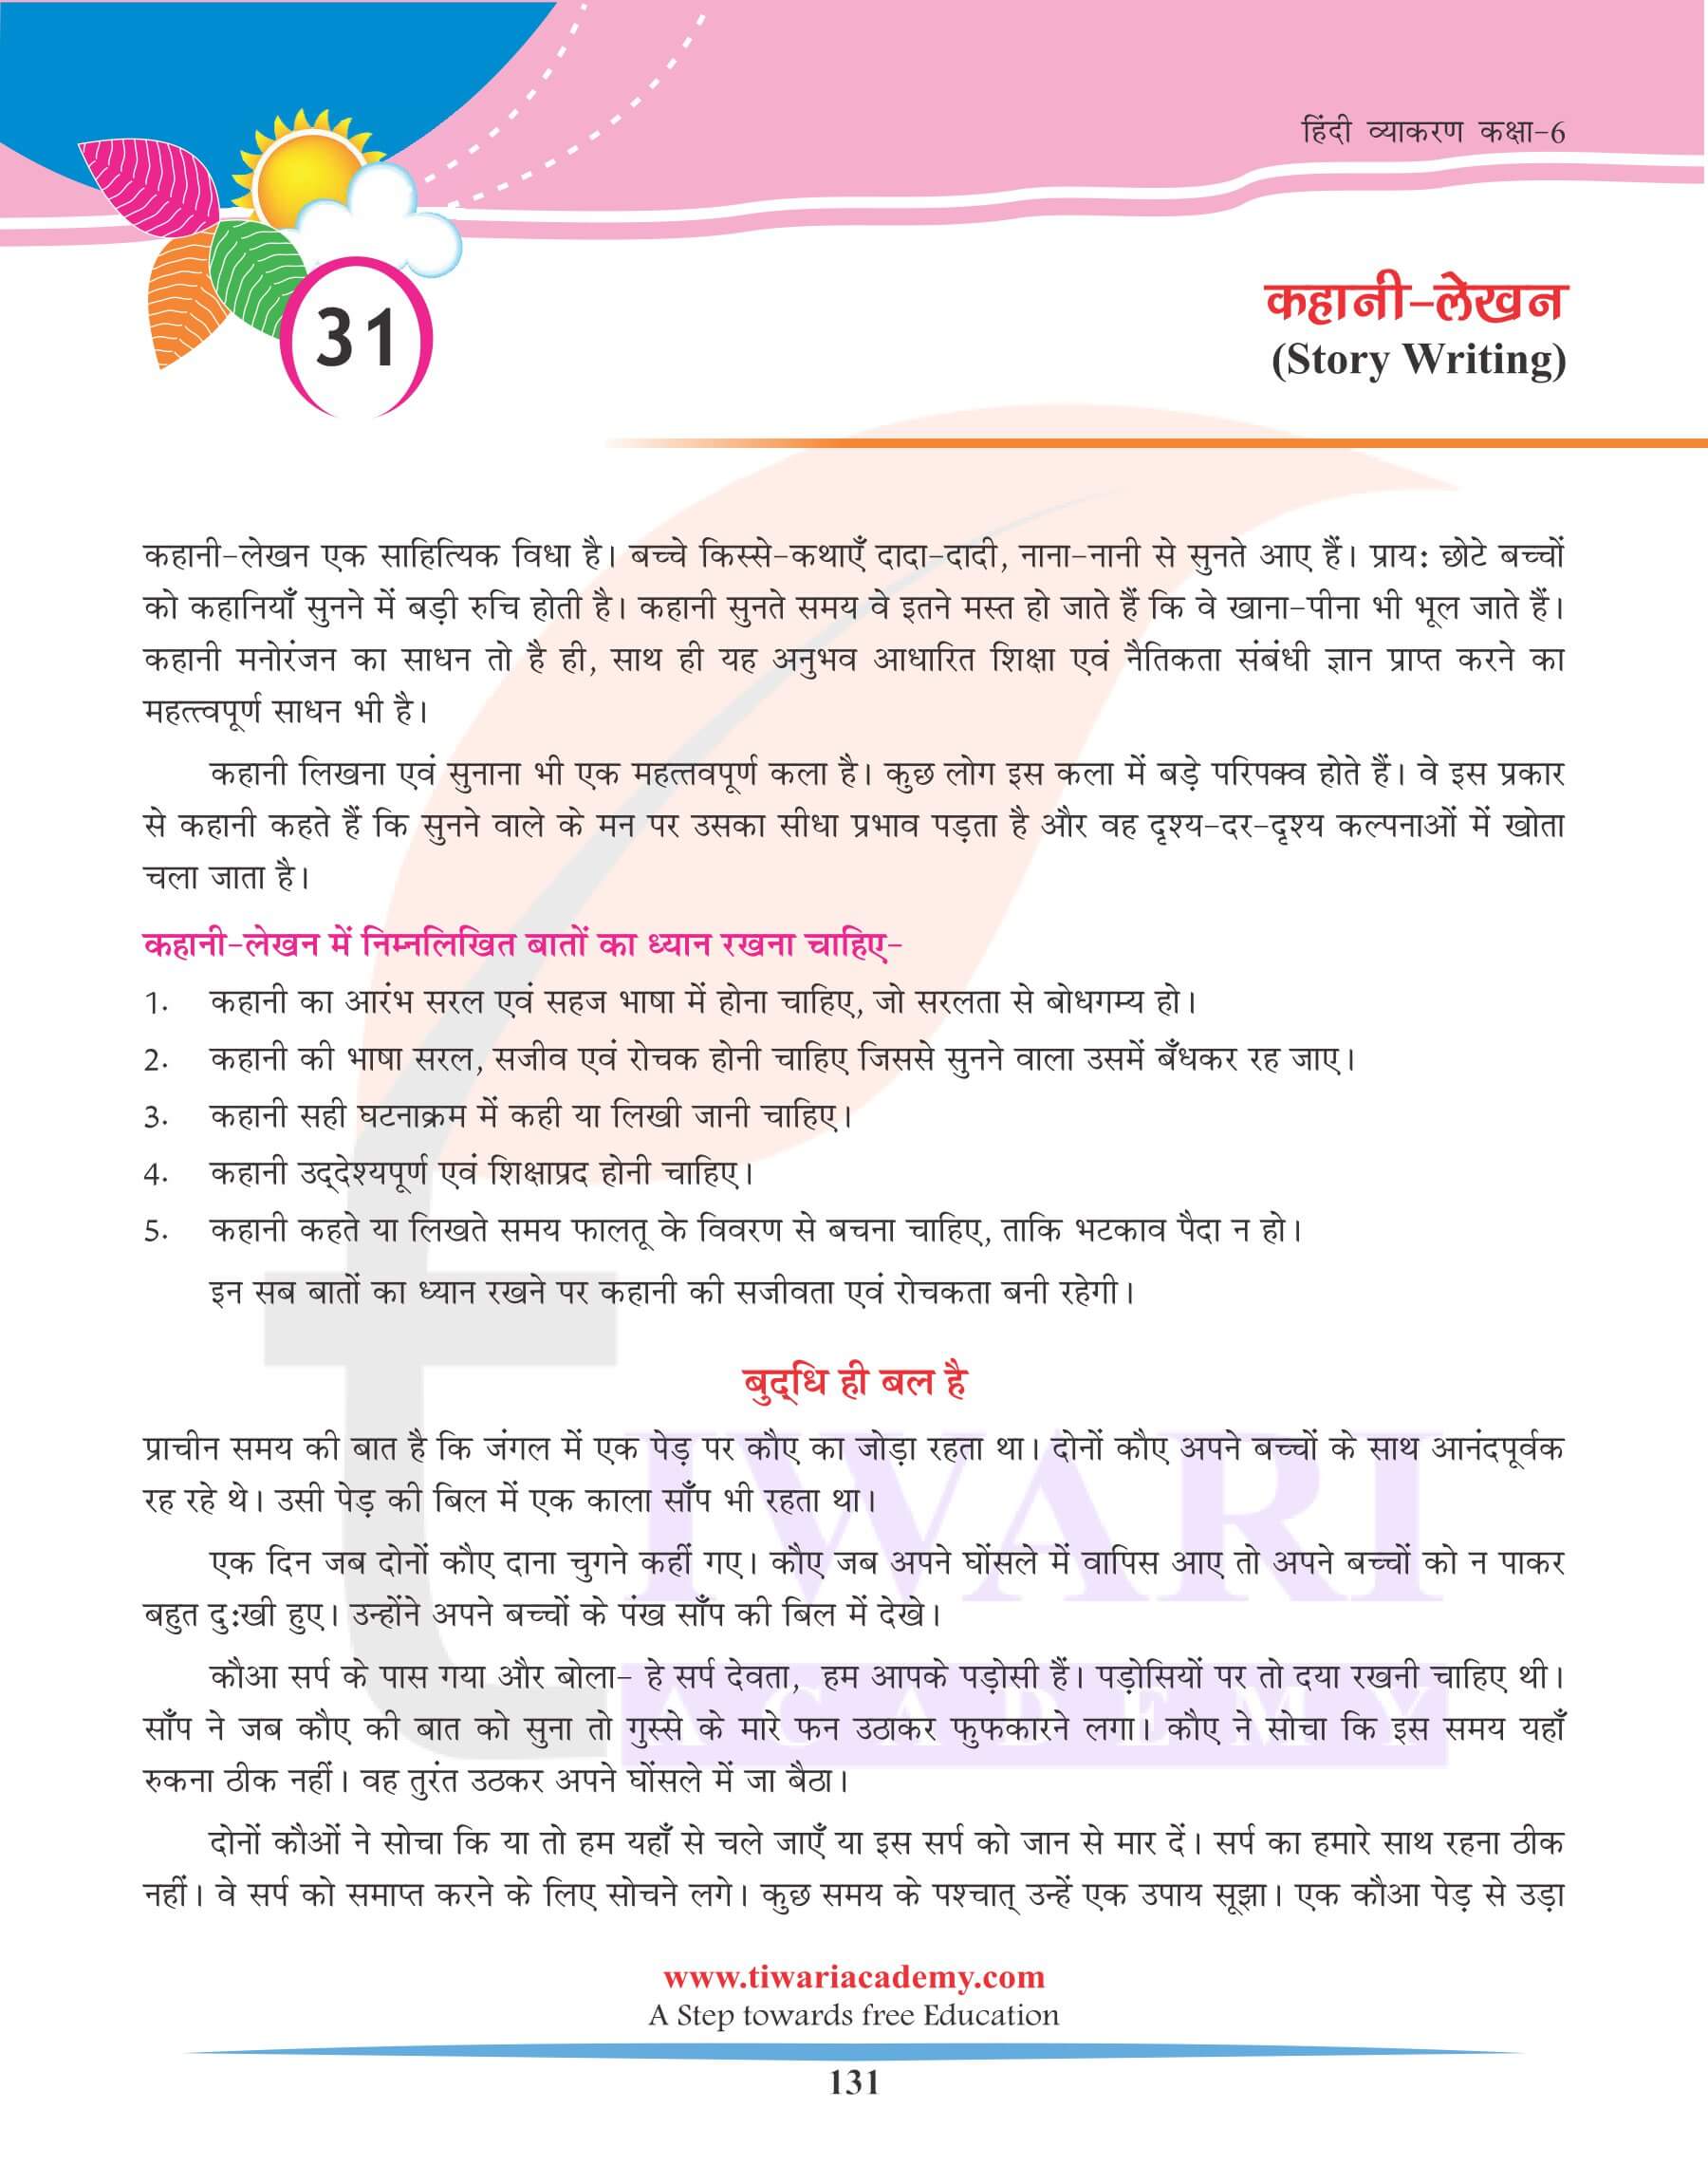 कक्षा 6 हिंदी व्याकरण कहानी लेखन